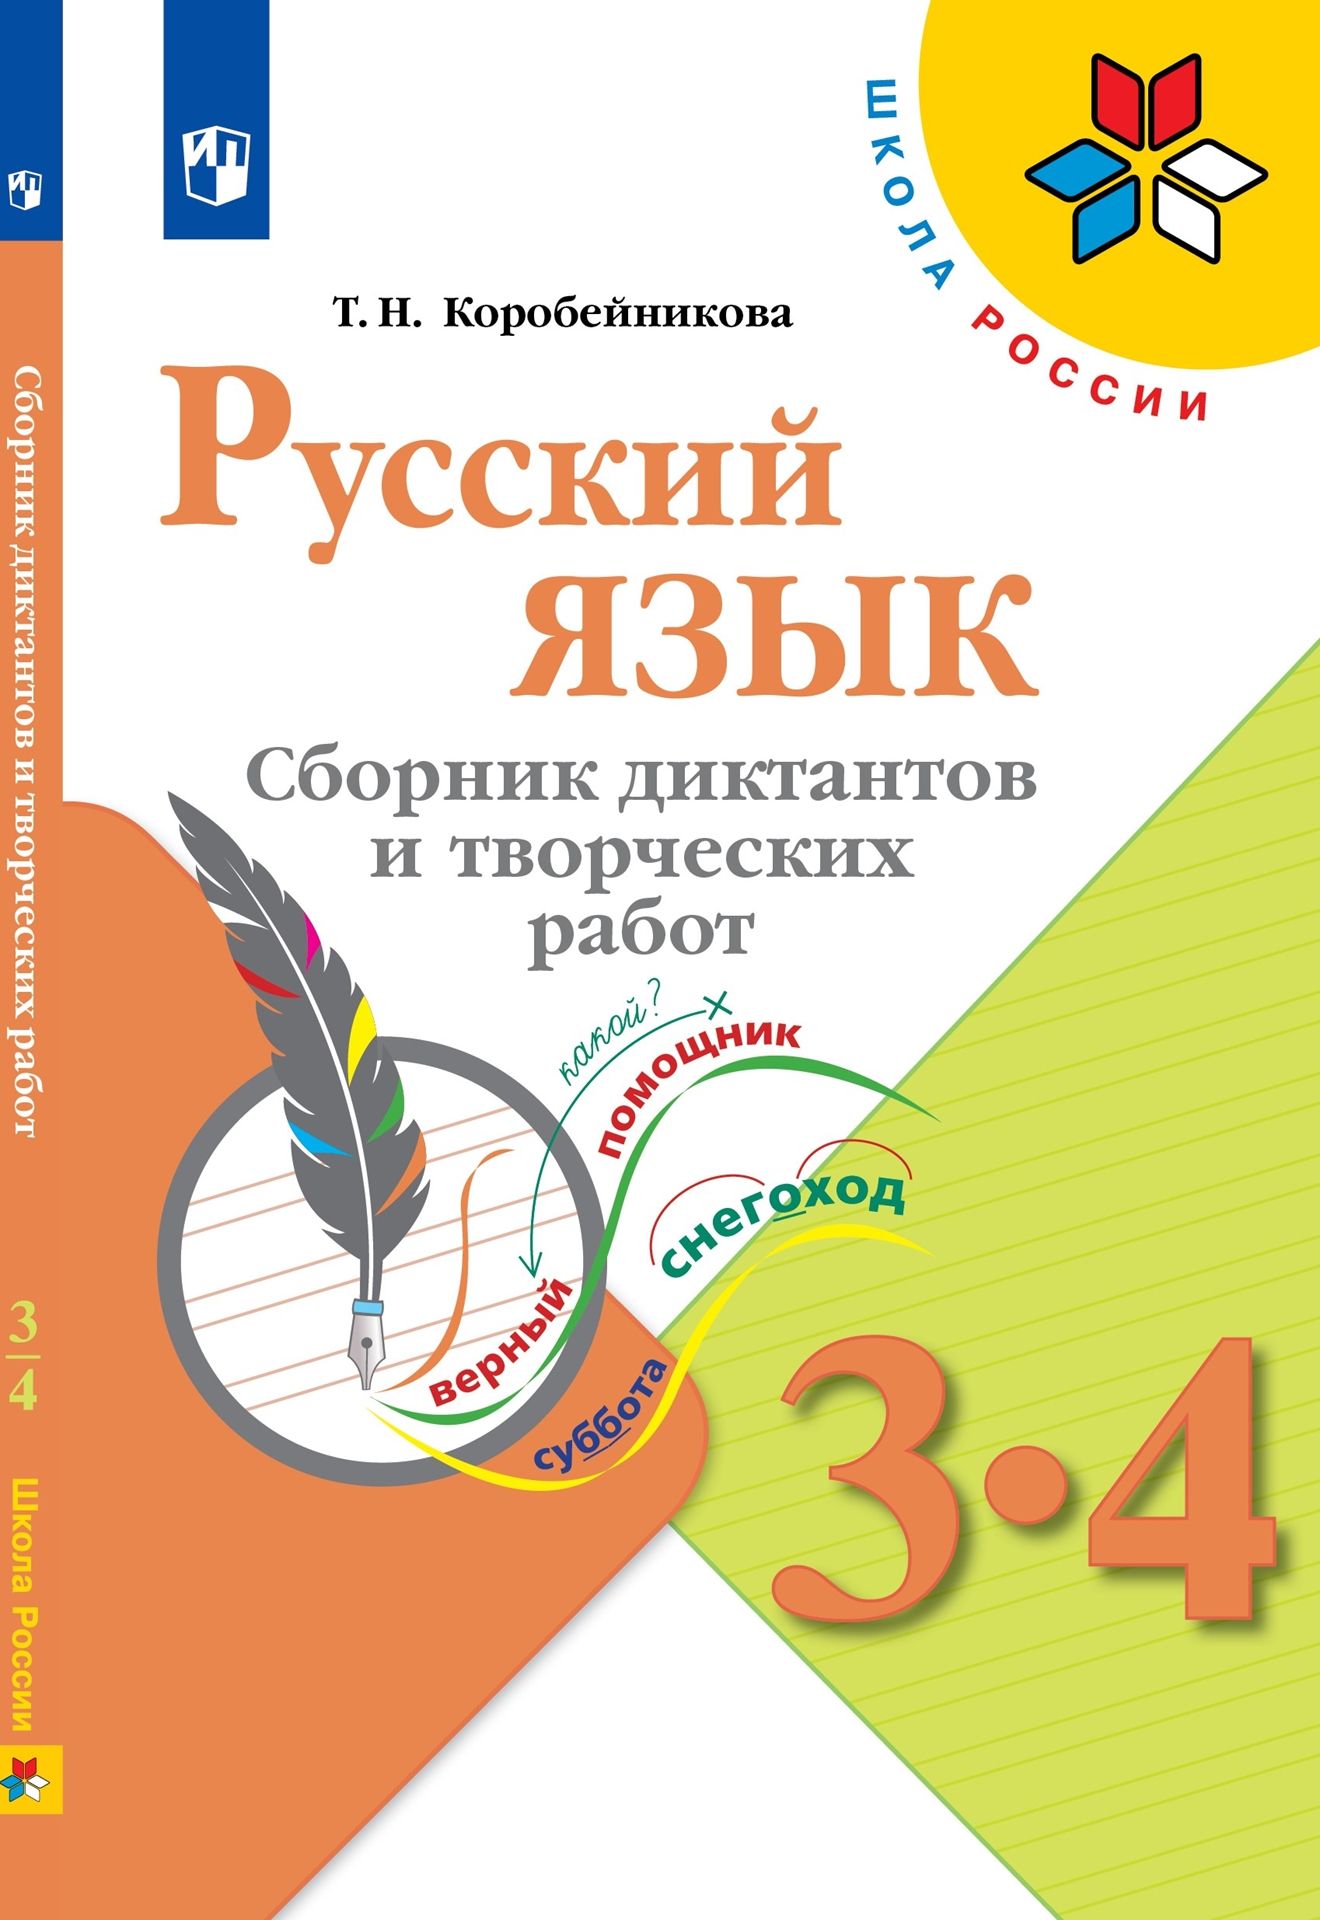 Русский язык. 3-4 классы: Сборник диктантов и творческих работ